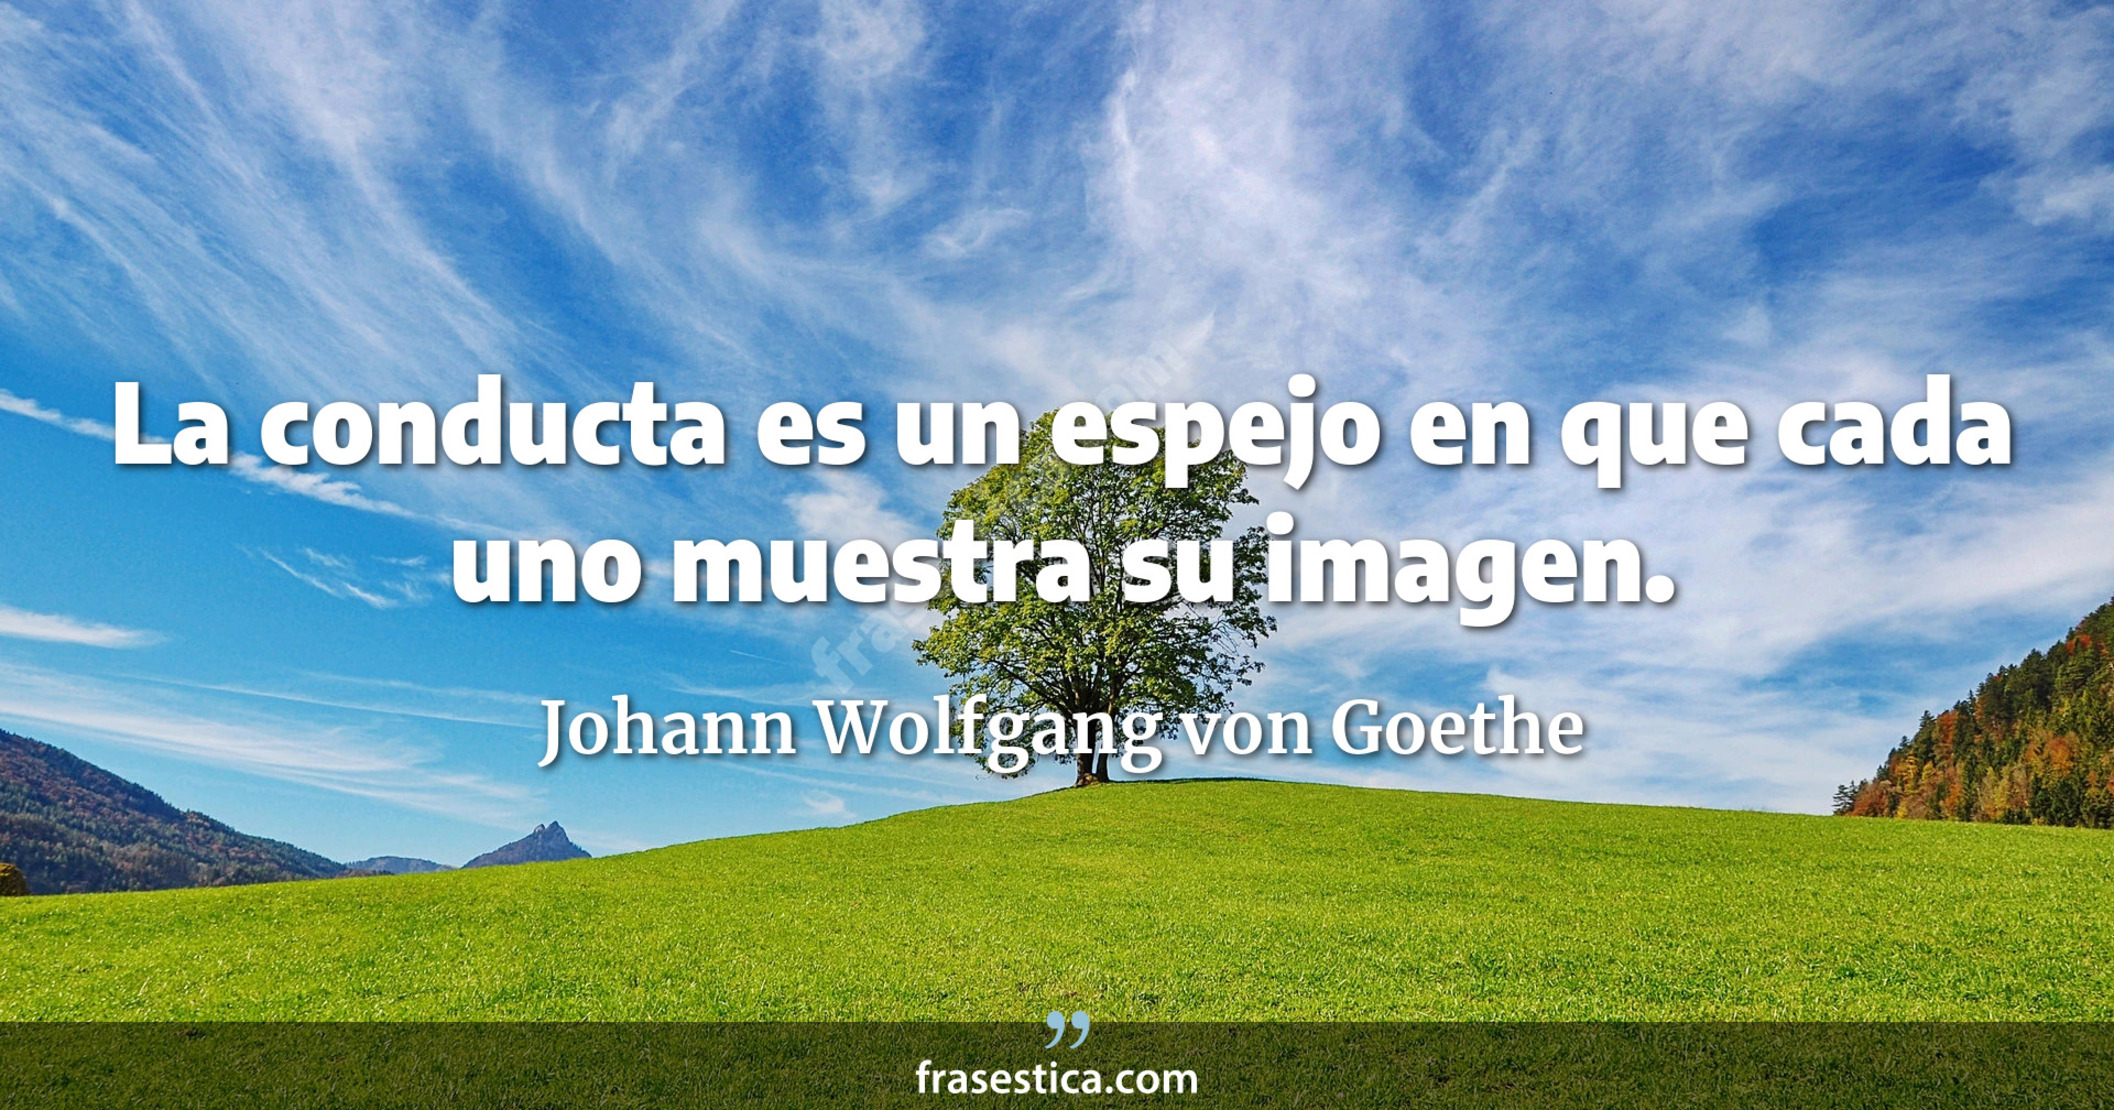 La conducta es un espejo en que cada uno muestra su imagen. - Johann Wolfgang von Goethe